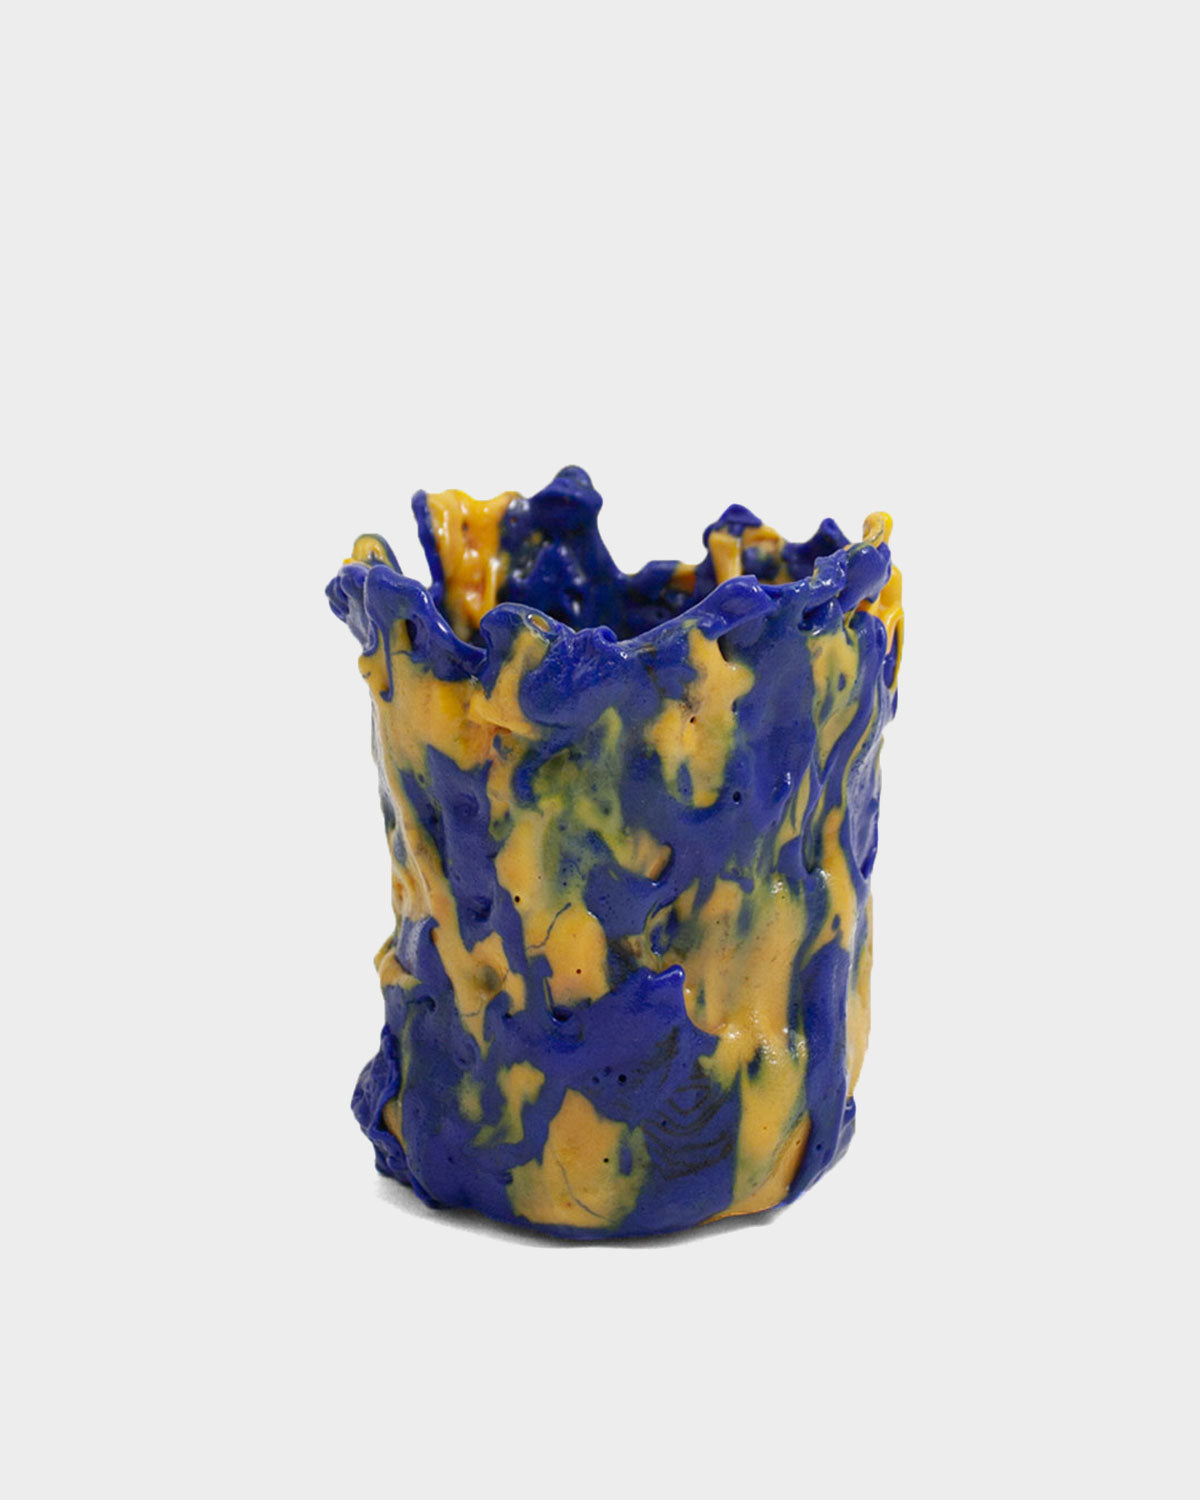 Flora Torba Yellow/Blue Vase